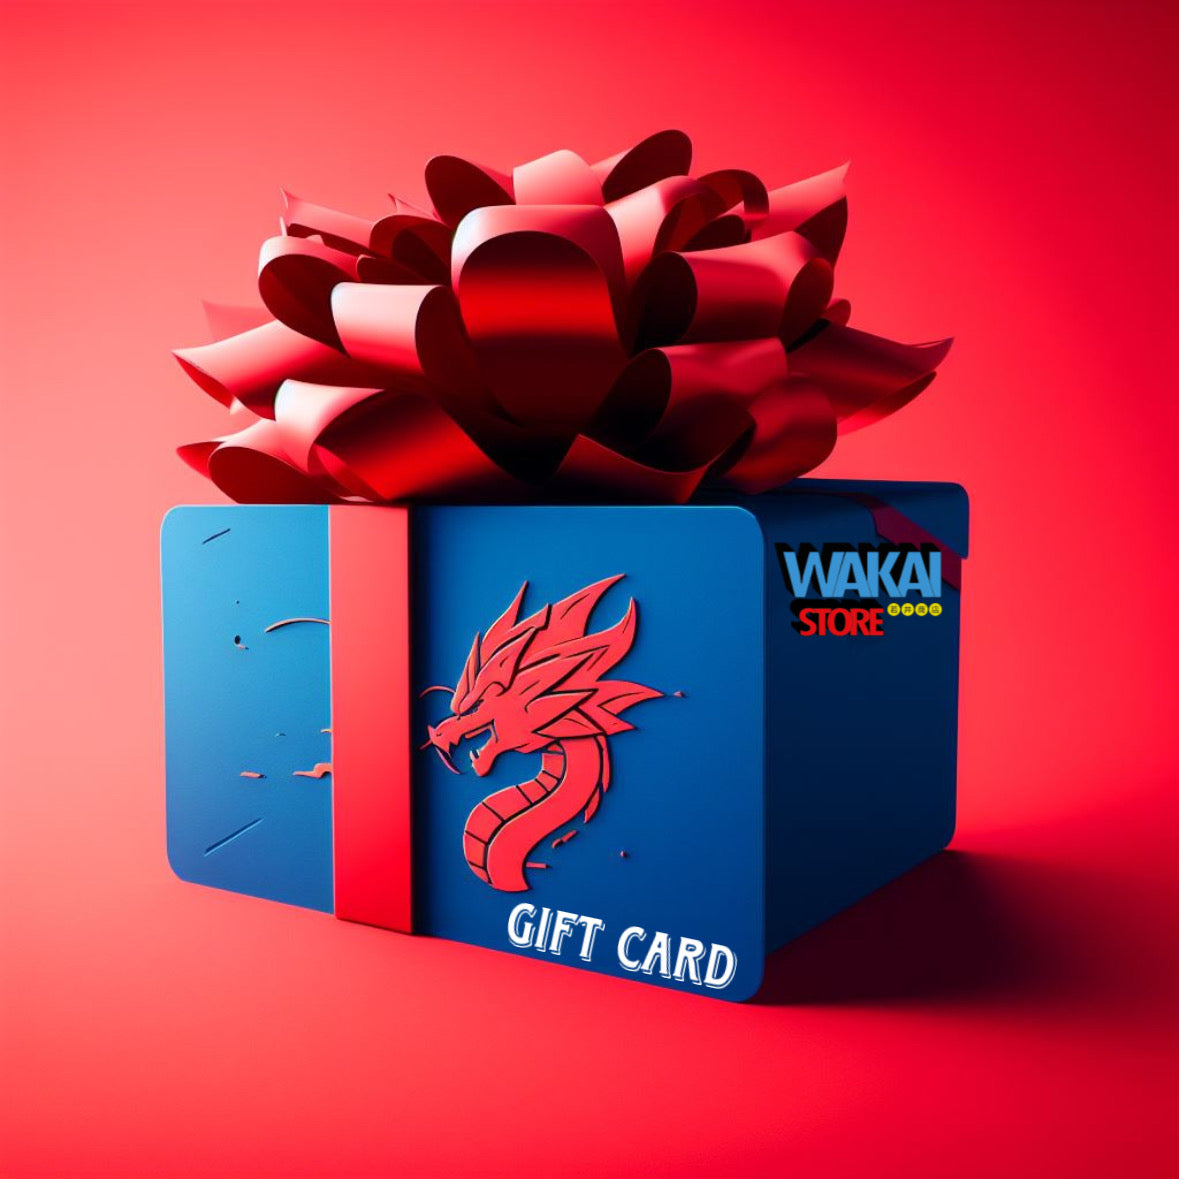 Gift Card Wakai Store